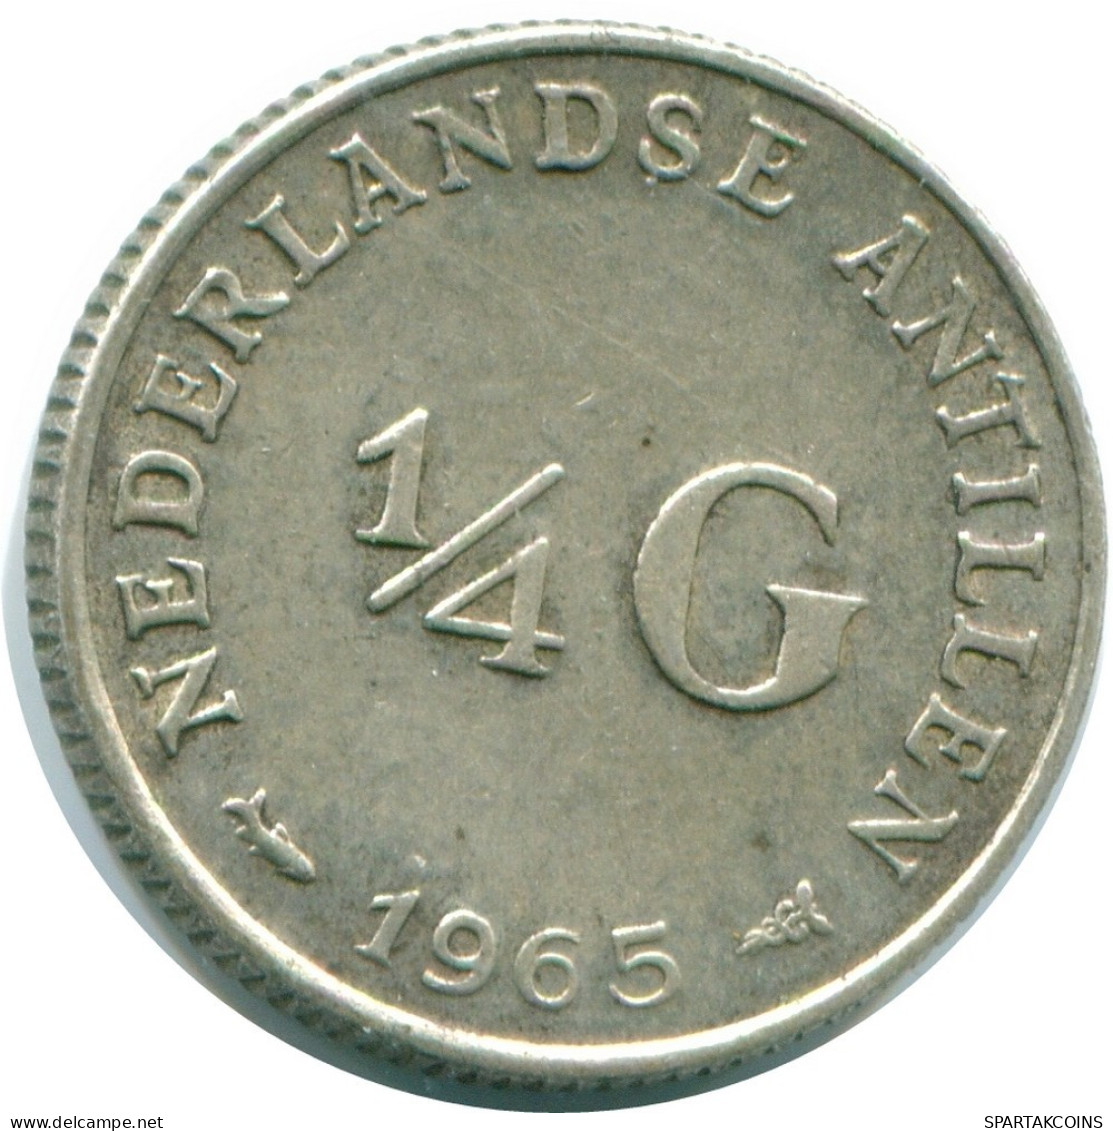 1/4 GULDEN 1965 NIEDERLÄNDISCHE ANTILLEN SILBER Koloniale Münze #NL11361.4.D.A - Nederlandse Antillen